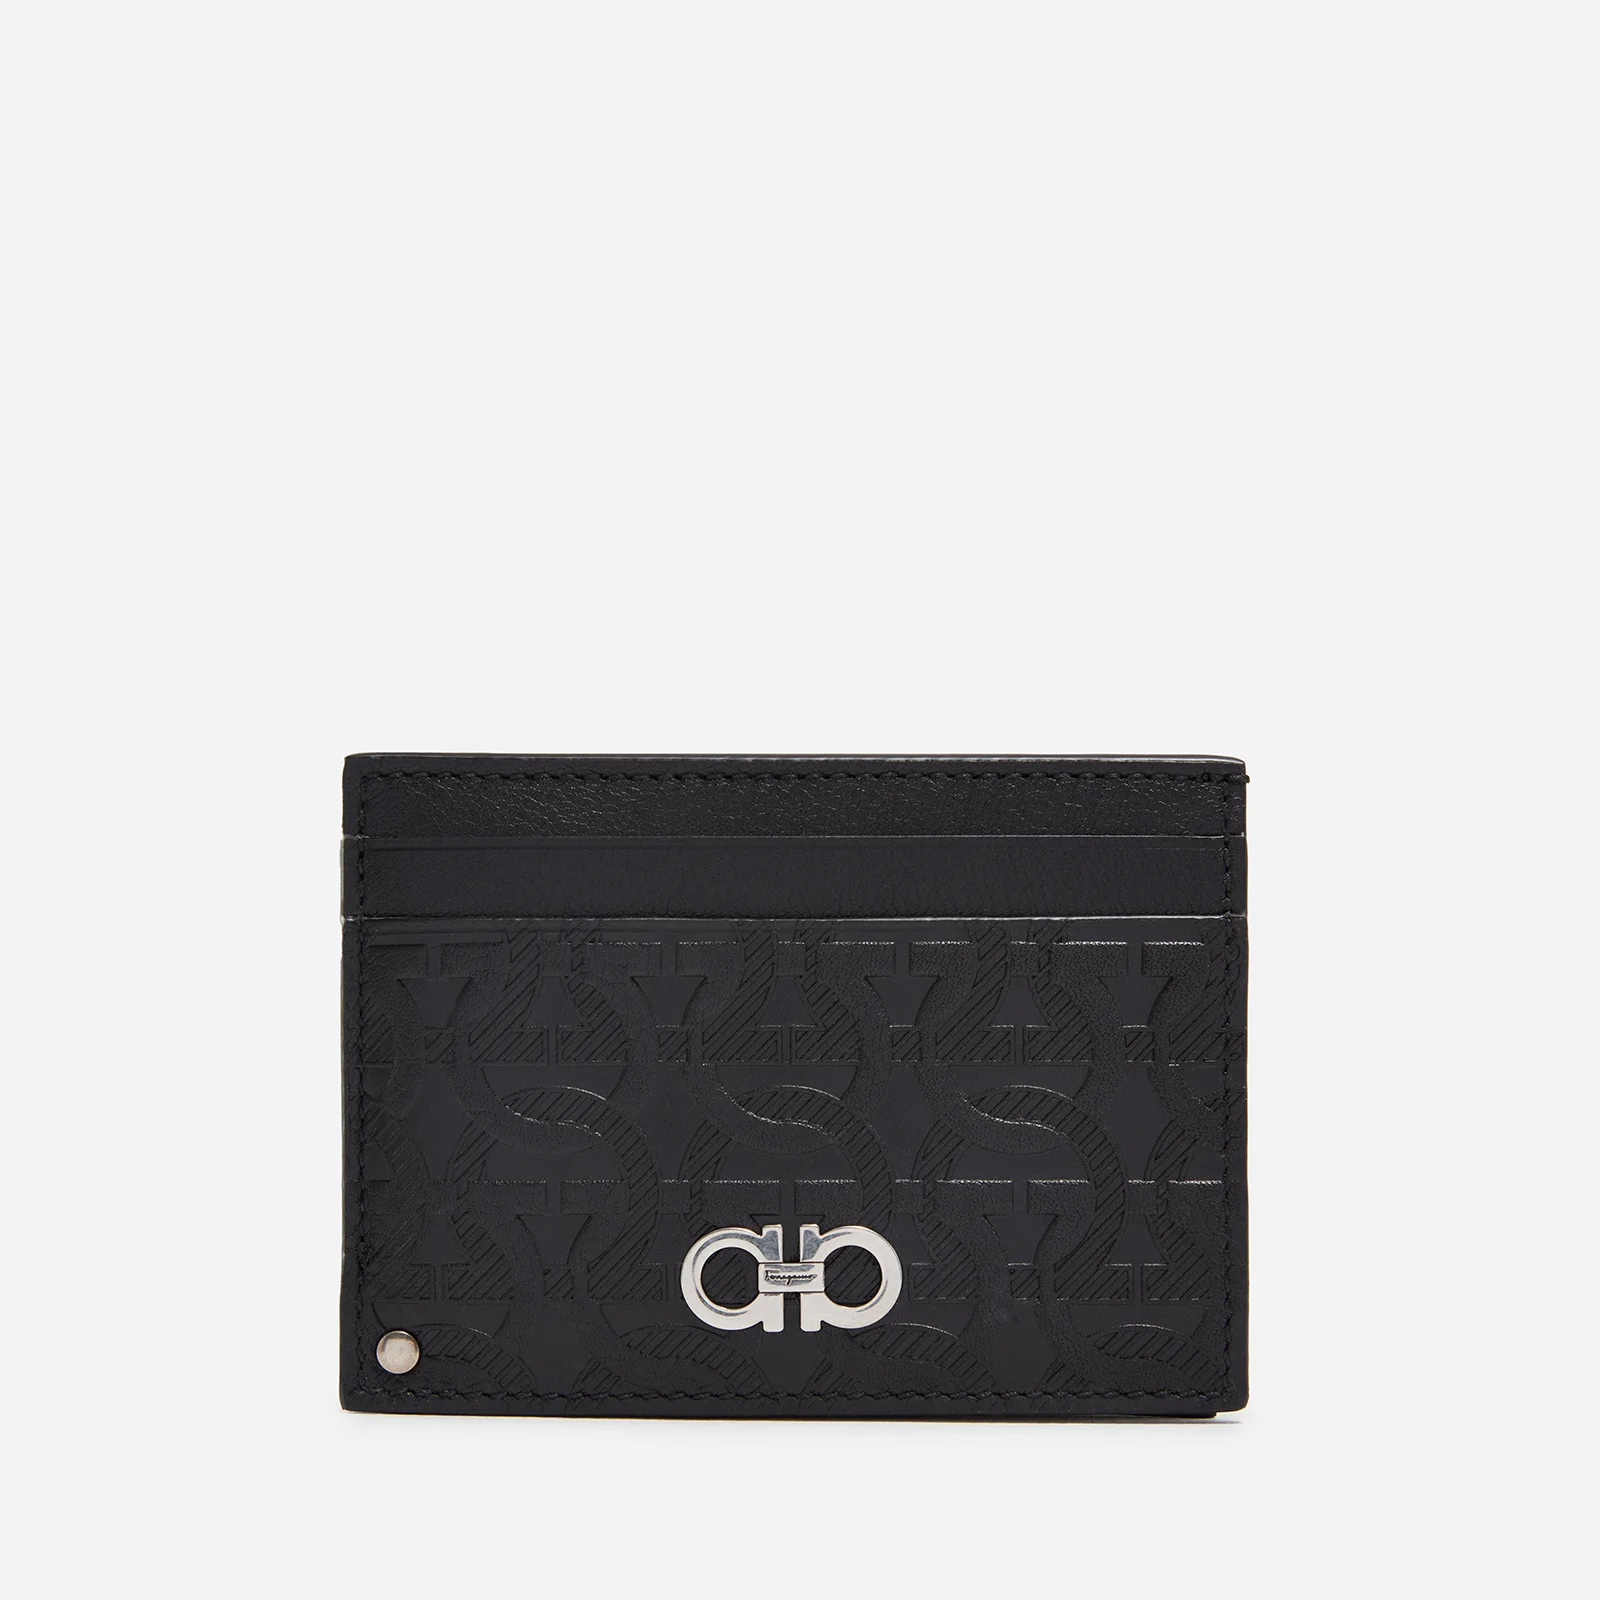 Salvatore Ferragamo Embossed Leather Cardholder Image 1